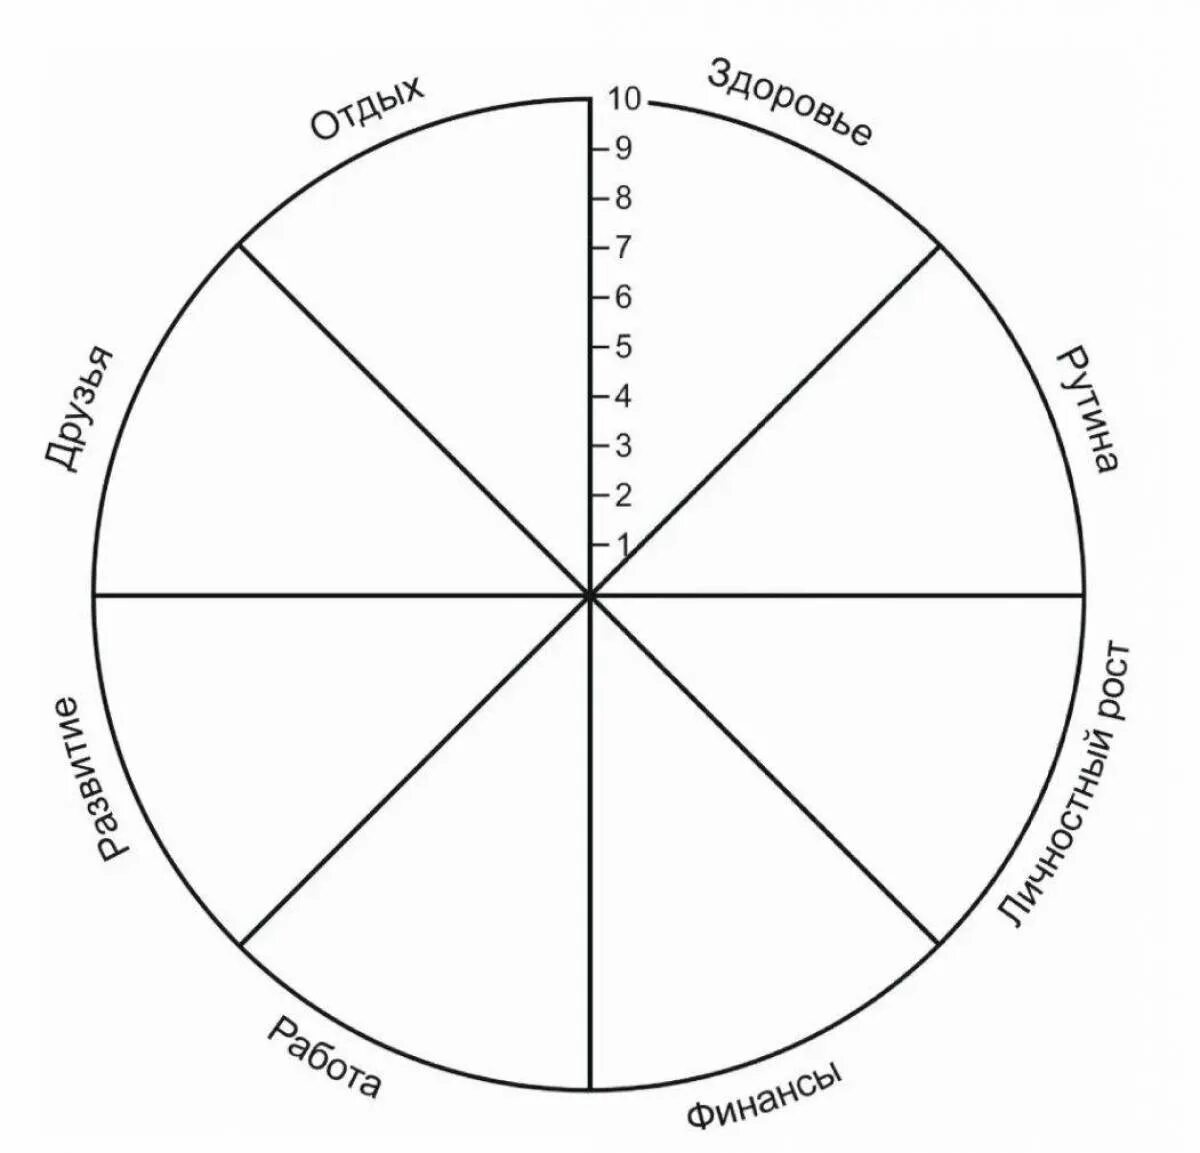 Колесо жизненного баланса 8 сфер. Схема колеса жизненного баланса. Коле/о жизненного баланса. Колесо жизни, баланс жизни (8 основных сфер).